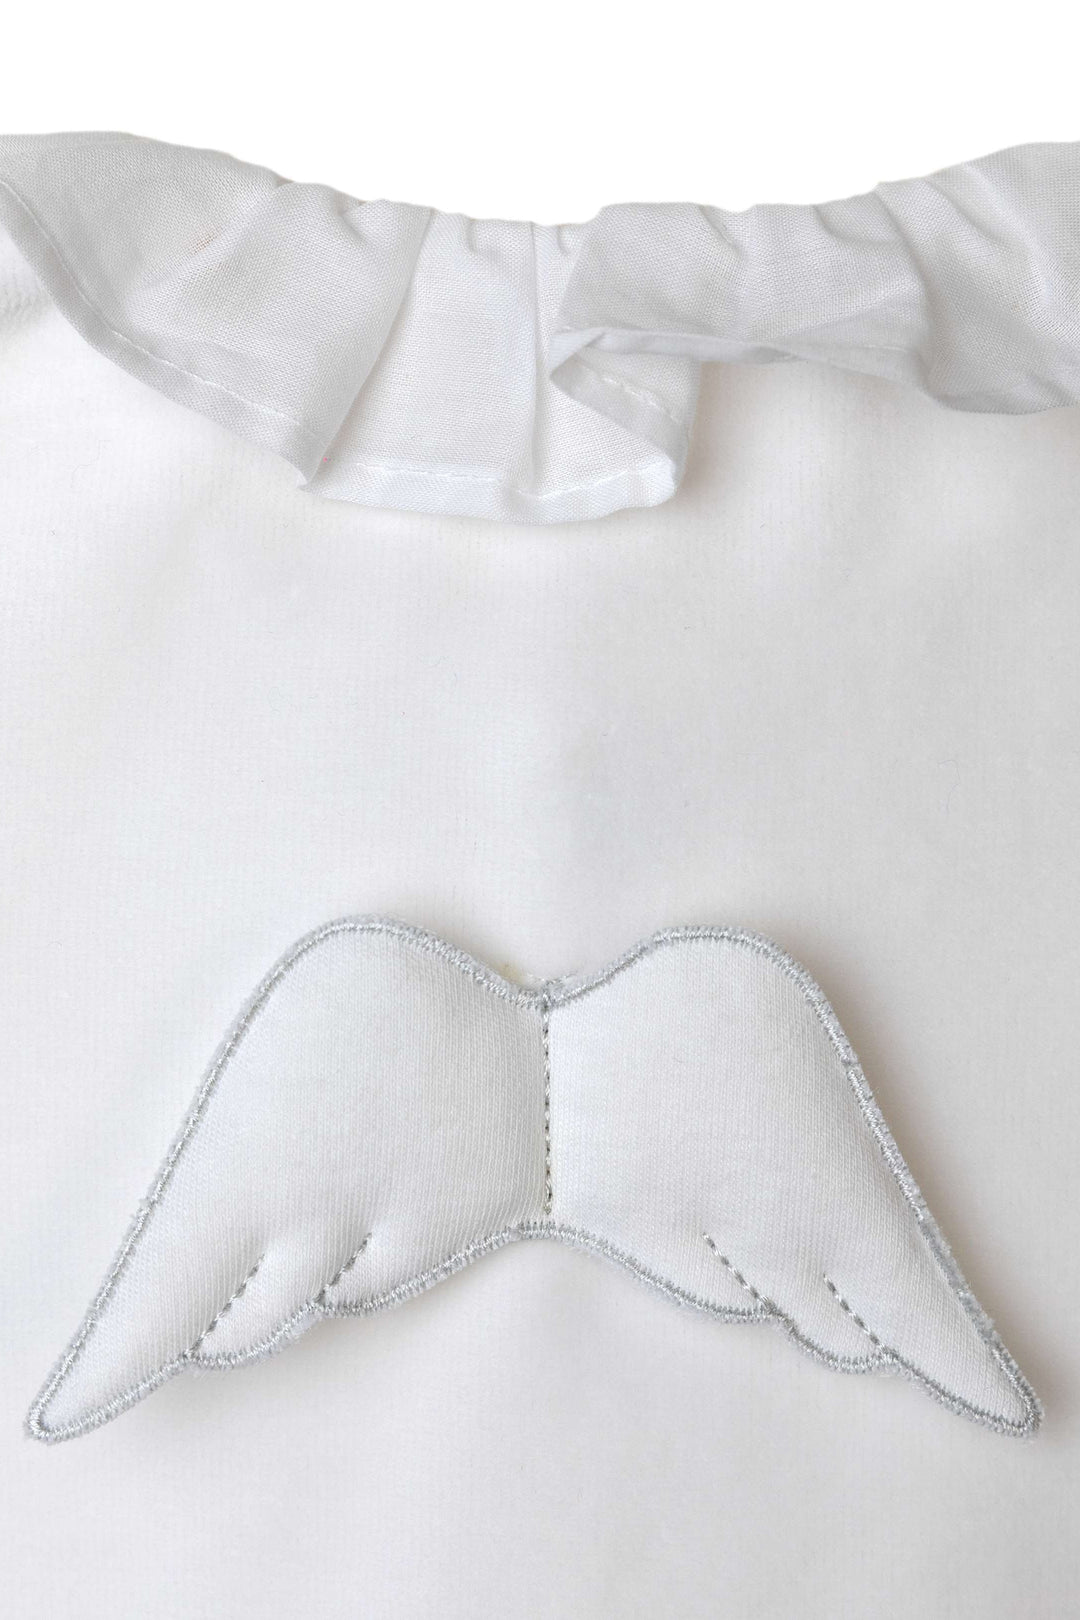 Baby Gi Velour Angel Wing Gift Set | Millie and John